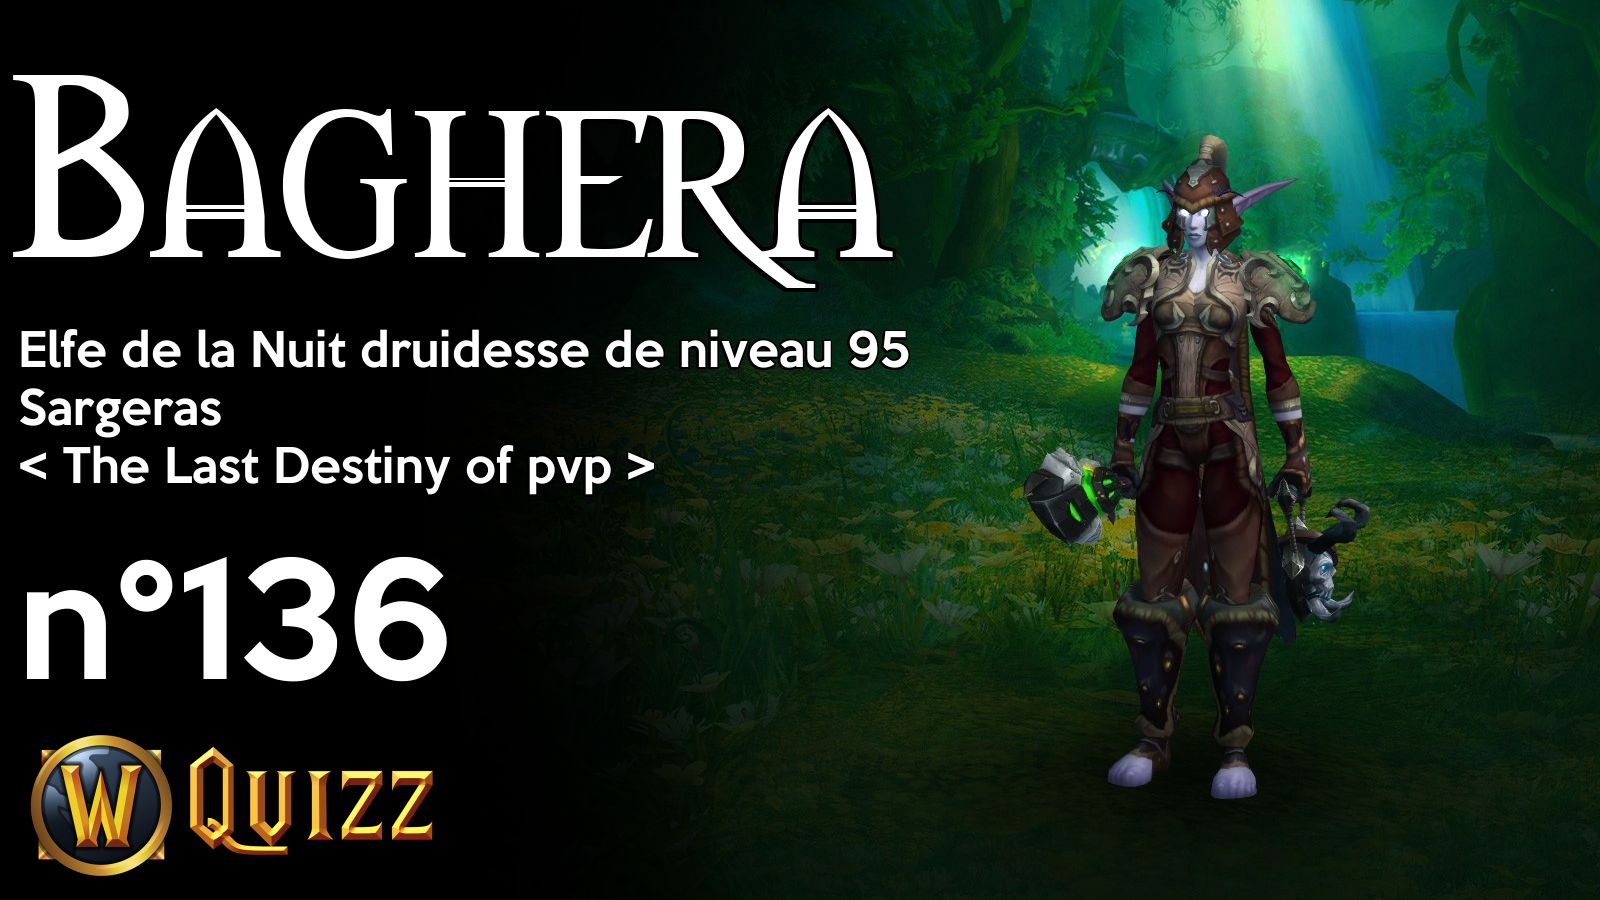 Baghera, Elfe de la Nuit druidesse de niveau 95, Sargeras